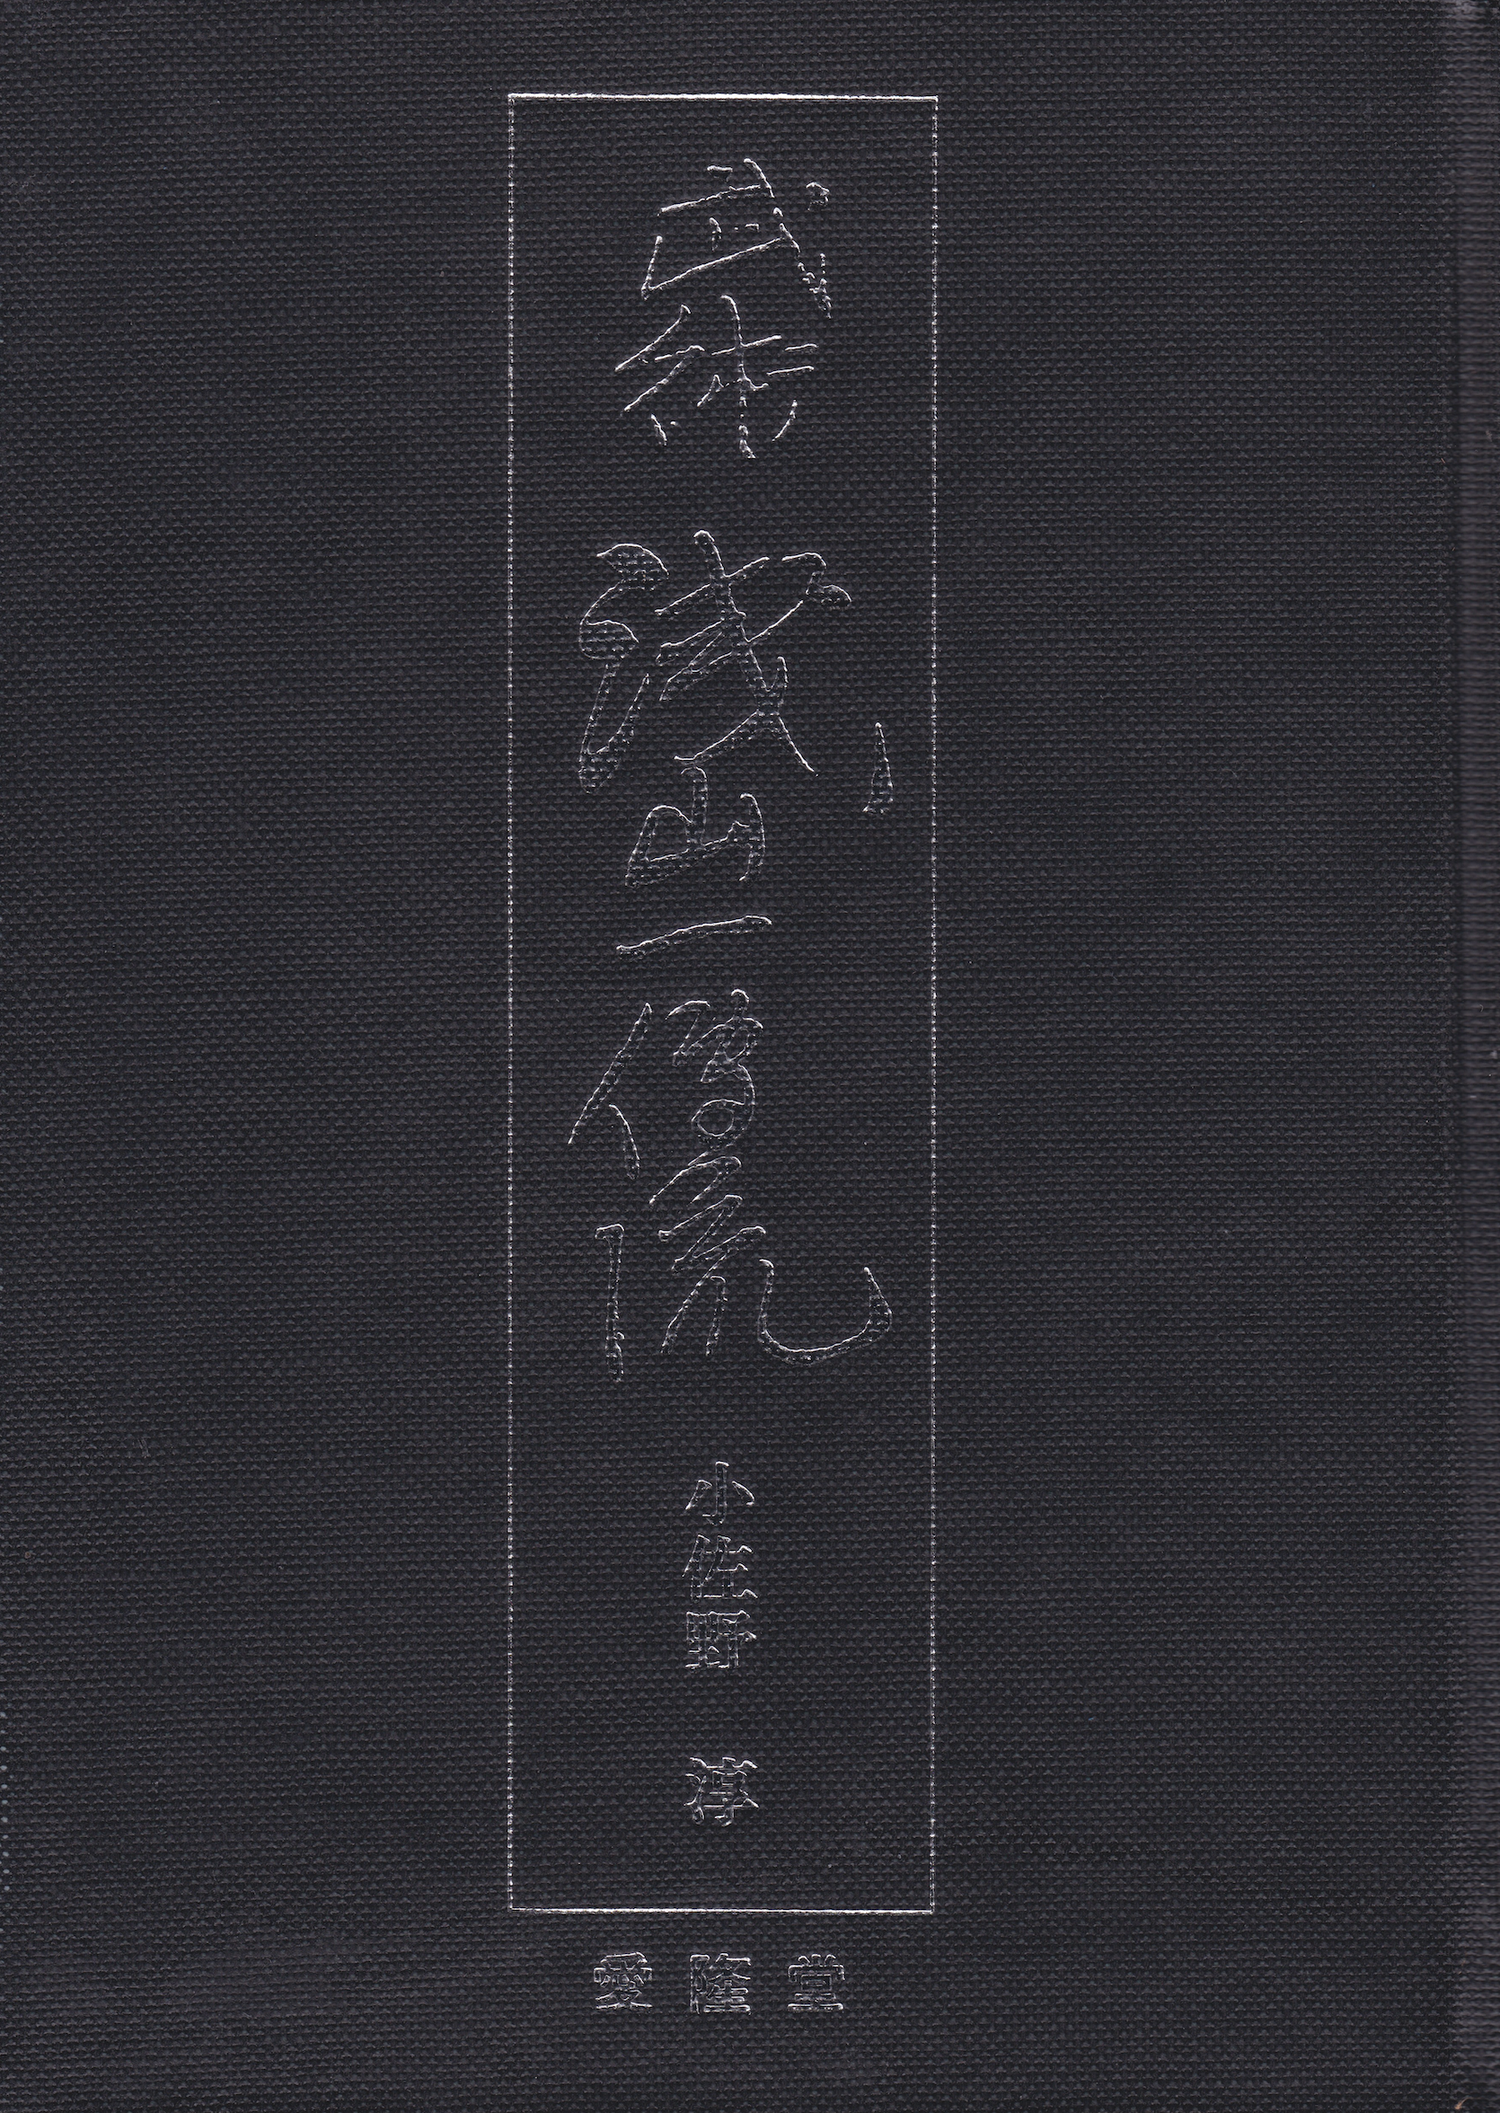 Asayama Ichiden Ryu Book by Jun Osano (Hardcover)(Preowned)